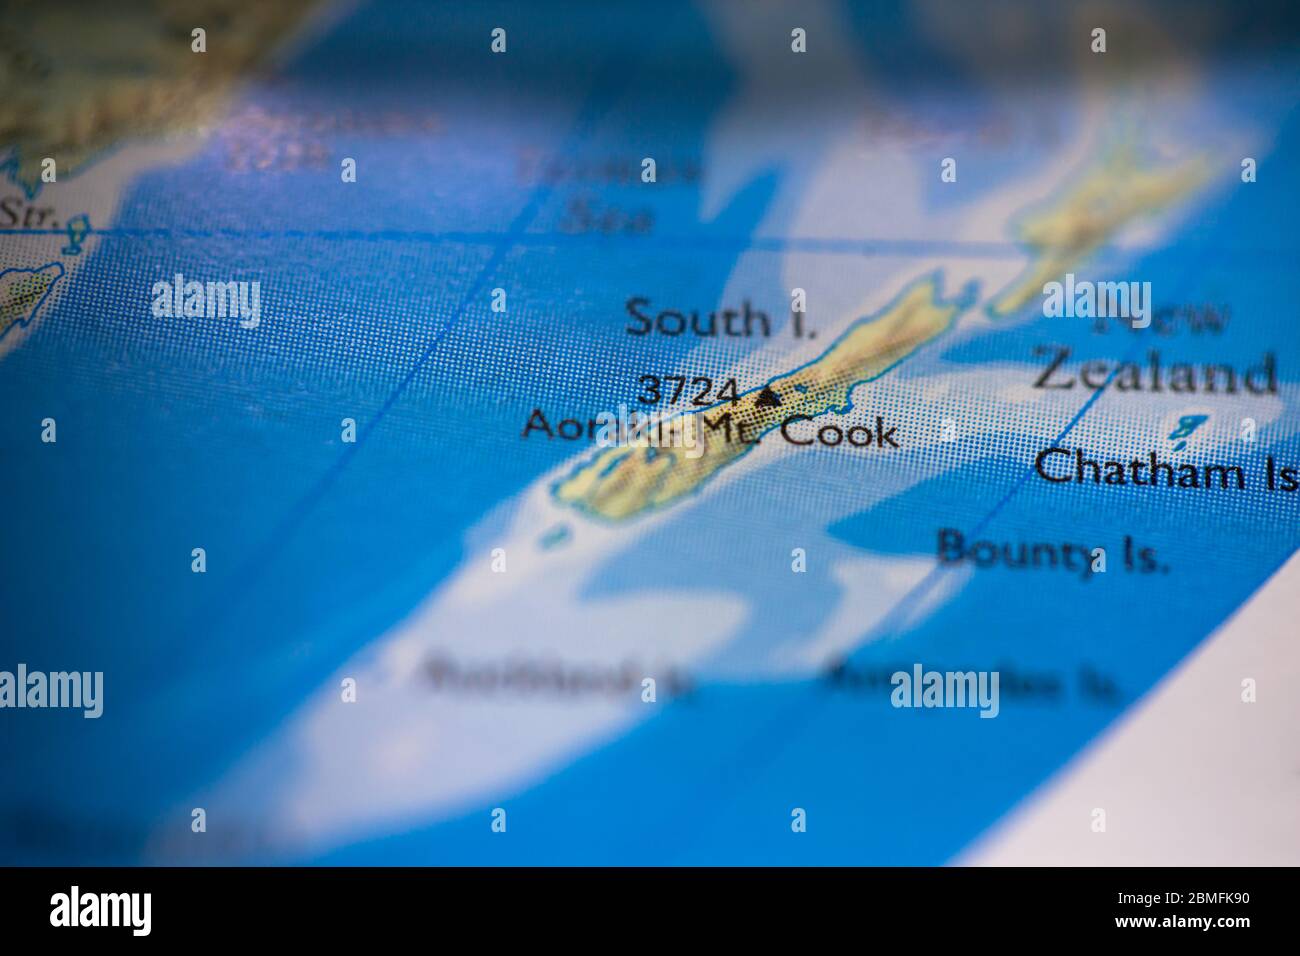 Geringe Schärfentiefe Fokus auf geografische Kartenposition des Mount Cook in Neuseeland im Australasia Kontinent auf Atlas Stockfoto